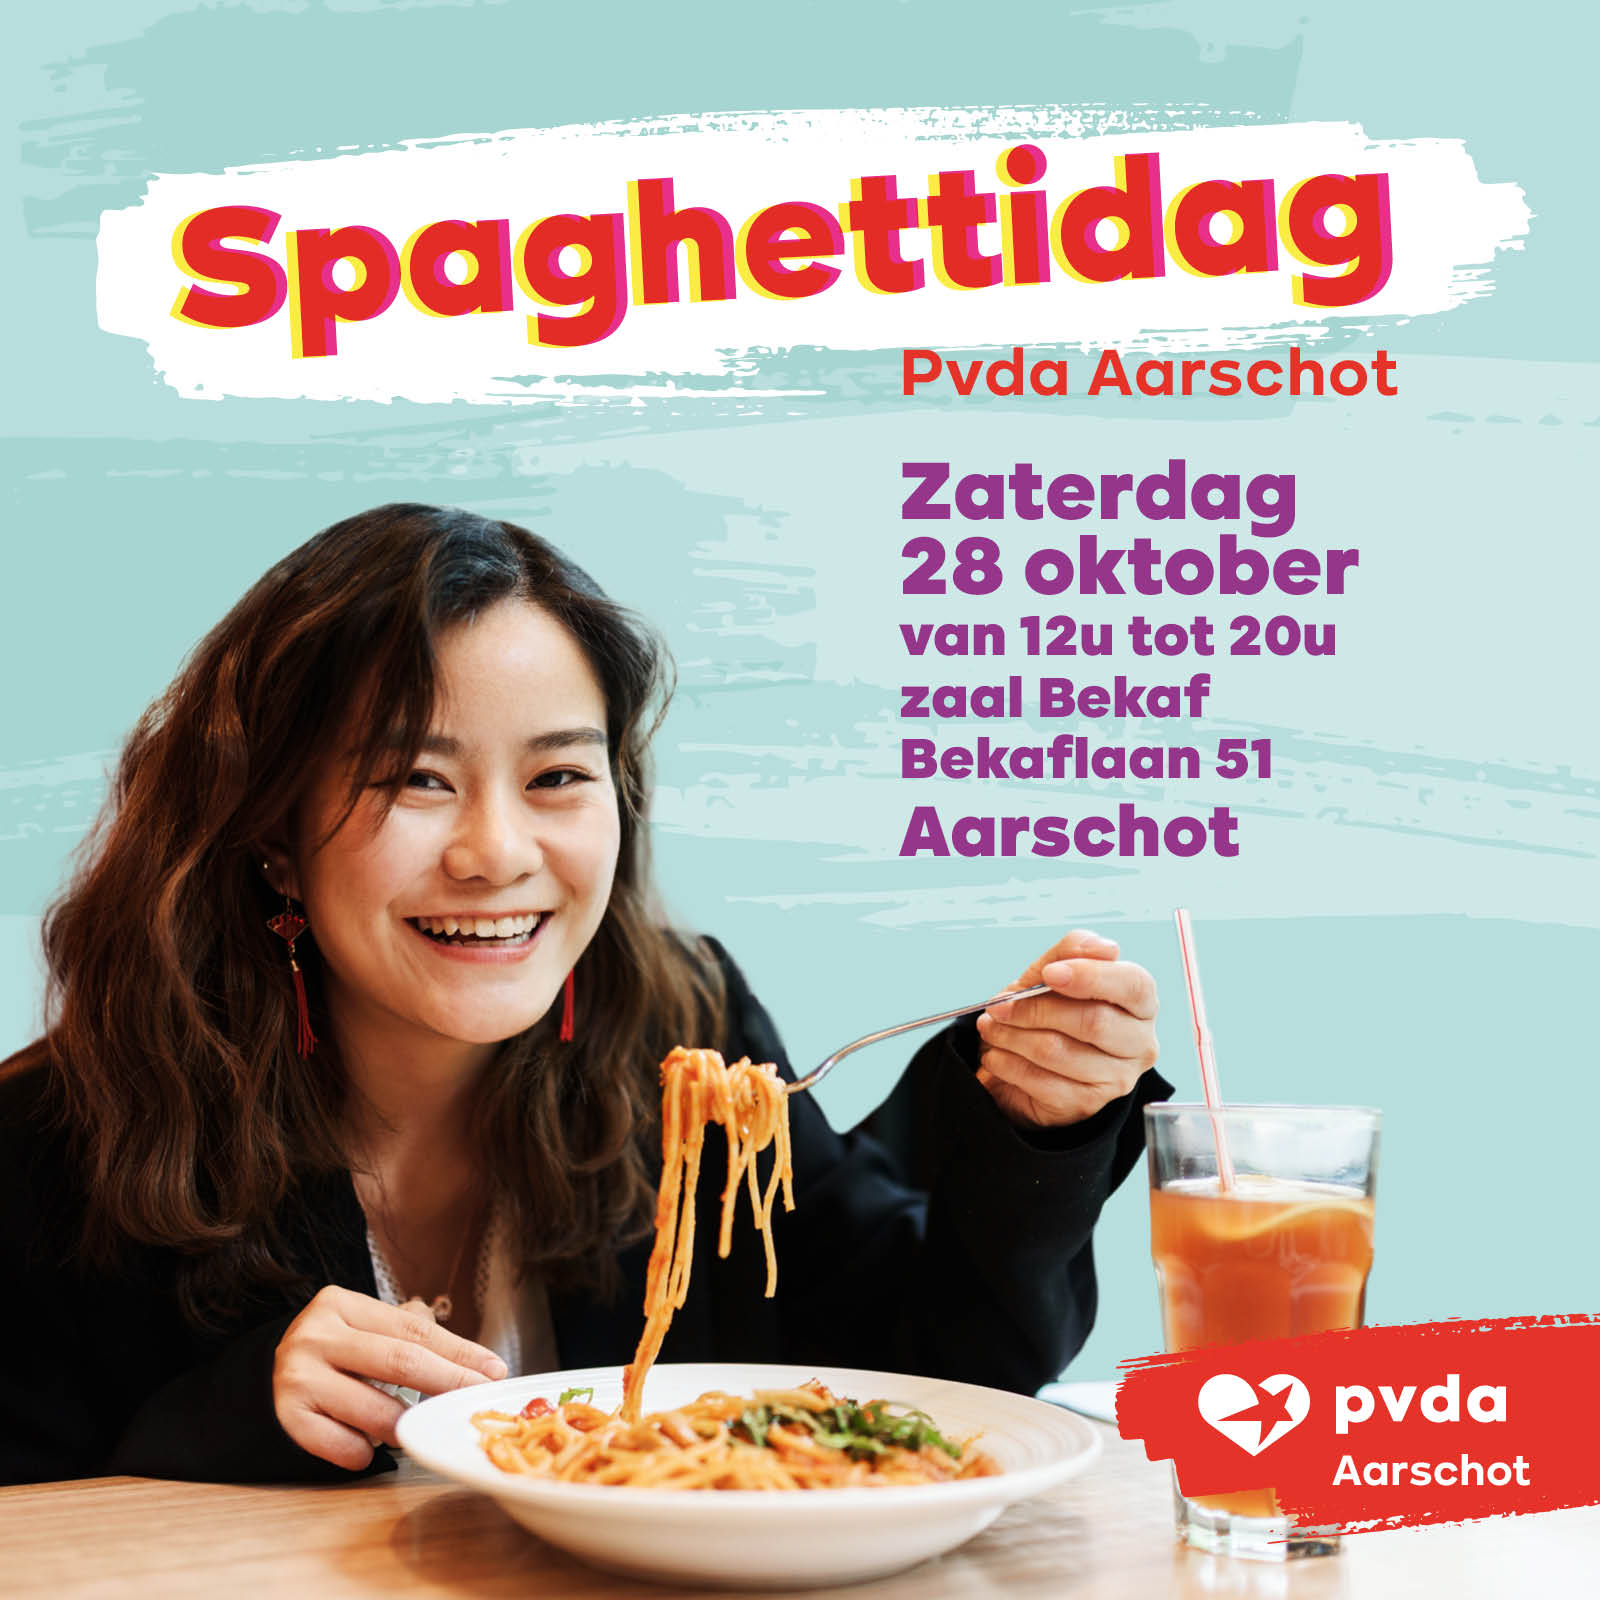 FB_post_spaghettidag_Aarschot